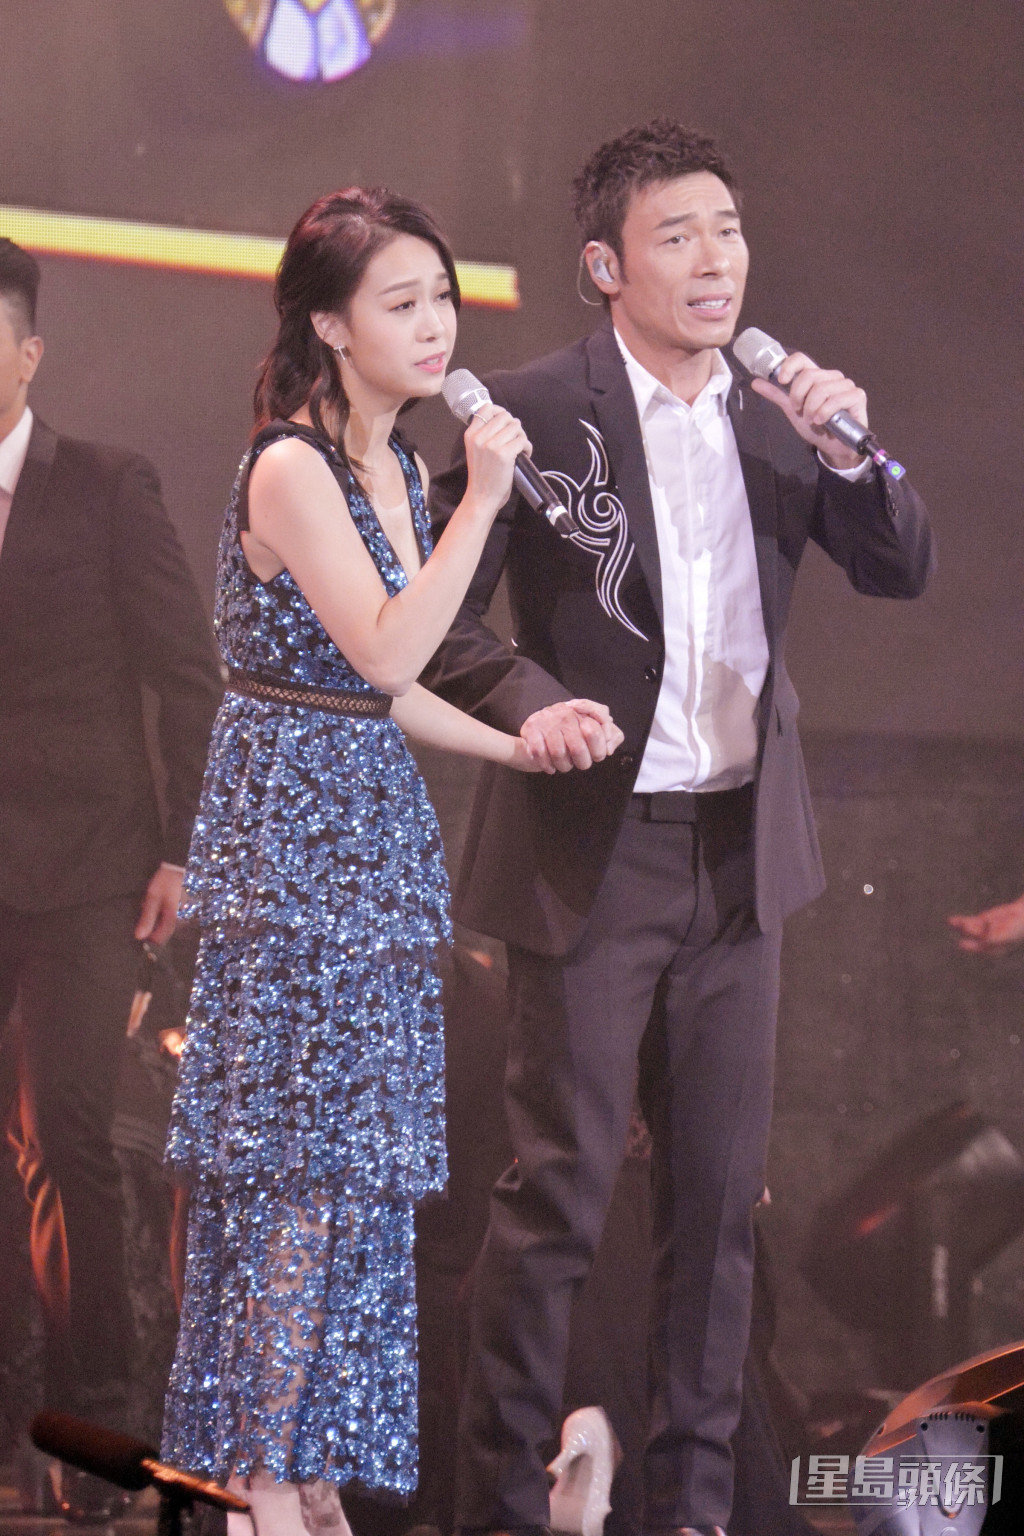 許志安與黃心穎於2018年曾在《星光熠熠耀保良》中合唱《會過去的》。